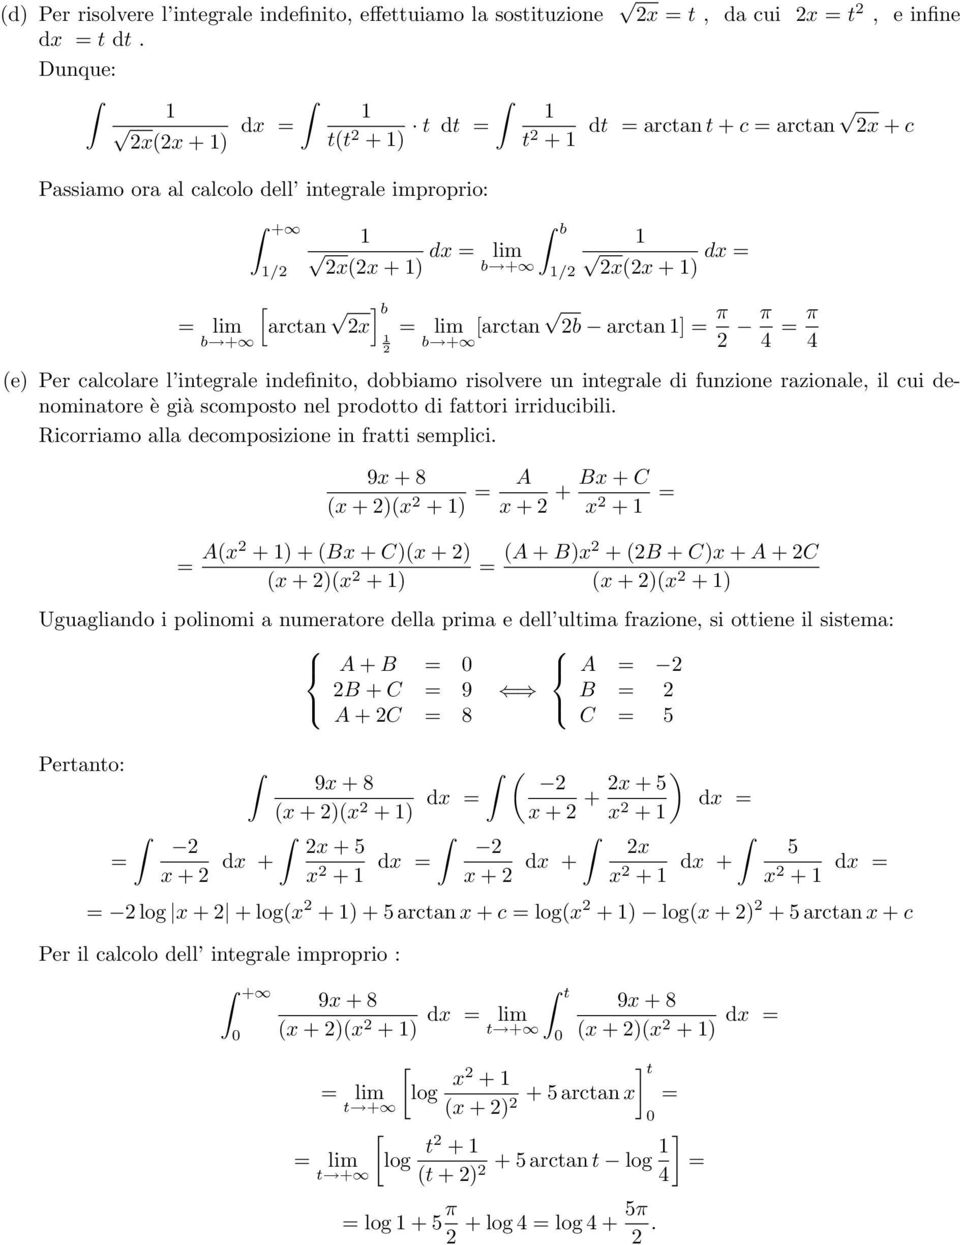 e Per calcolare l integrale indefinito, dobbiamo risolvere un integrale di funzione razionale, il cui denominatore è già scomposto nel prodotto di fattori irriducibili.